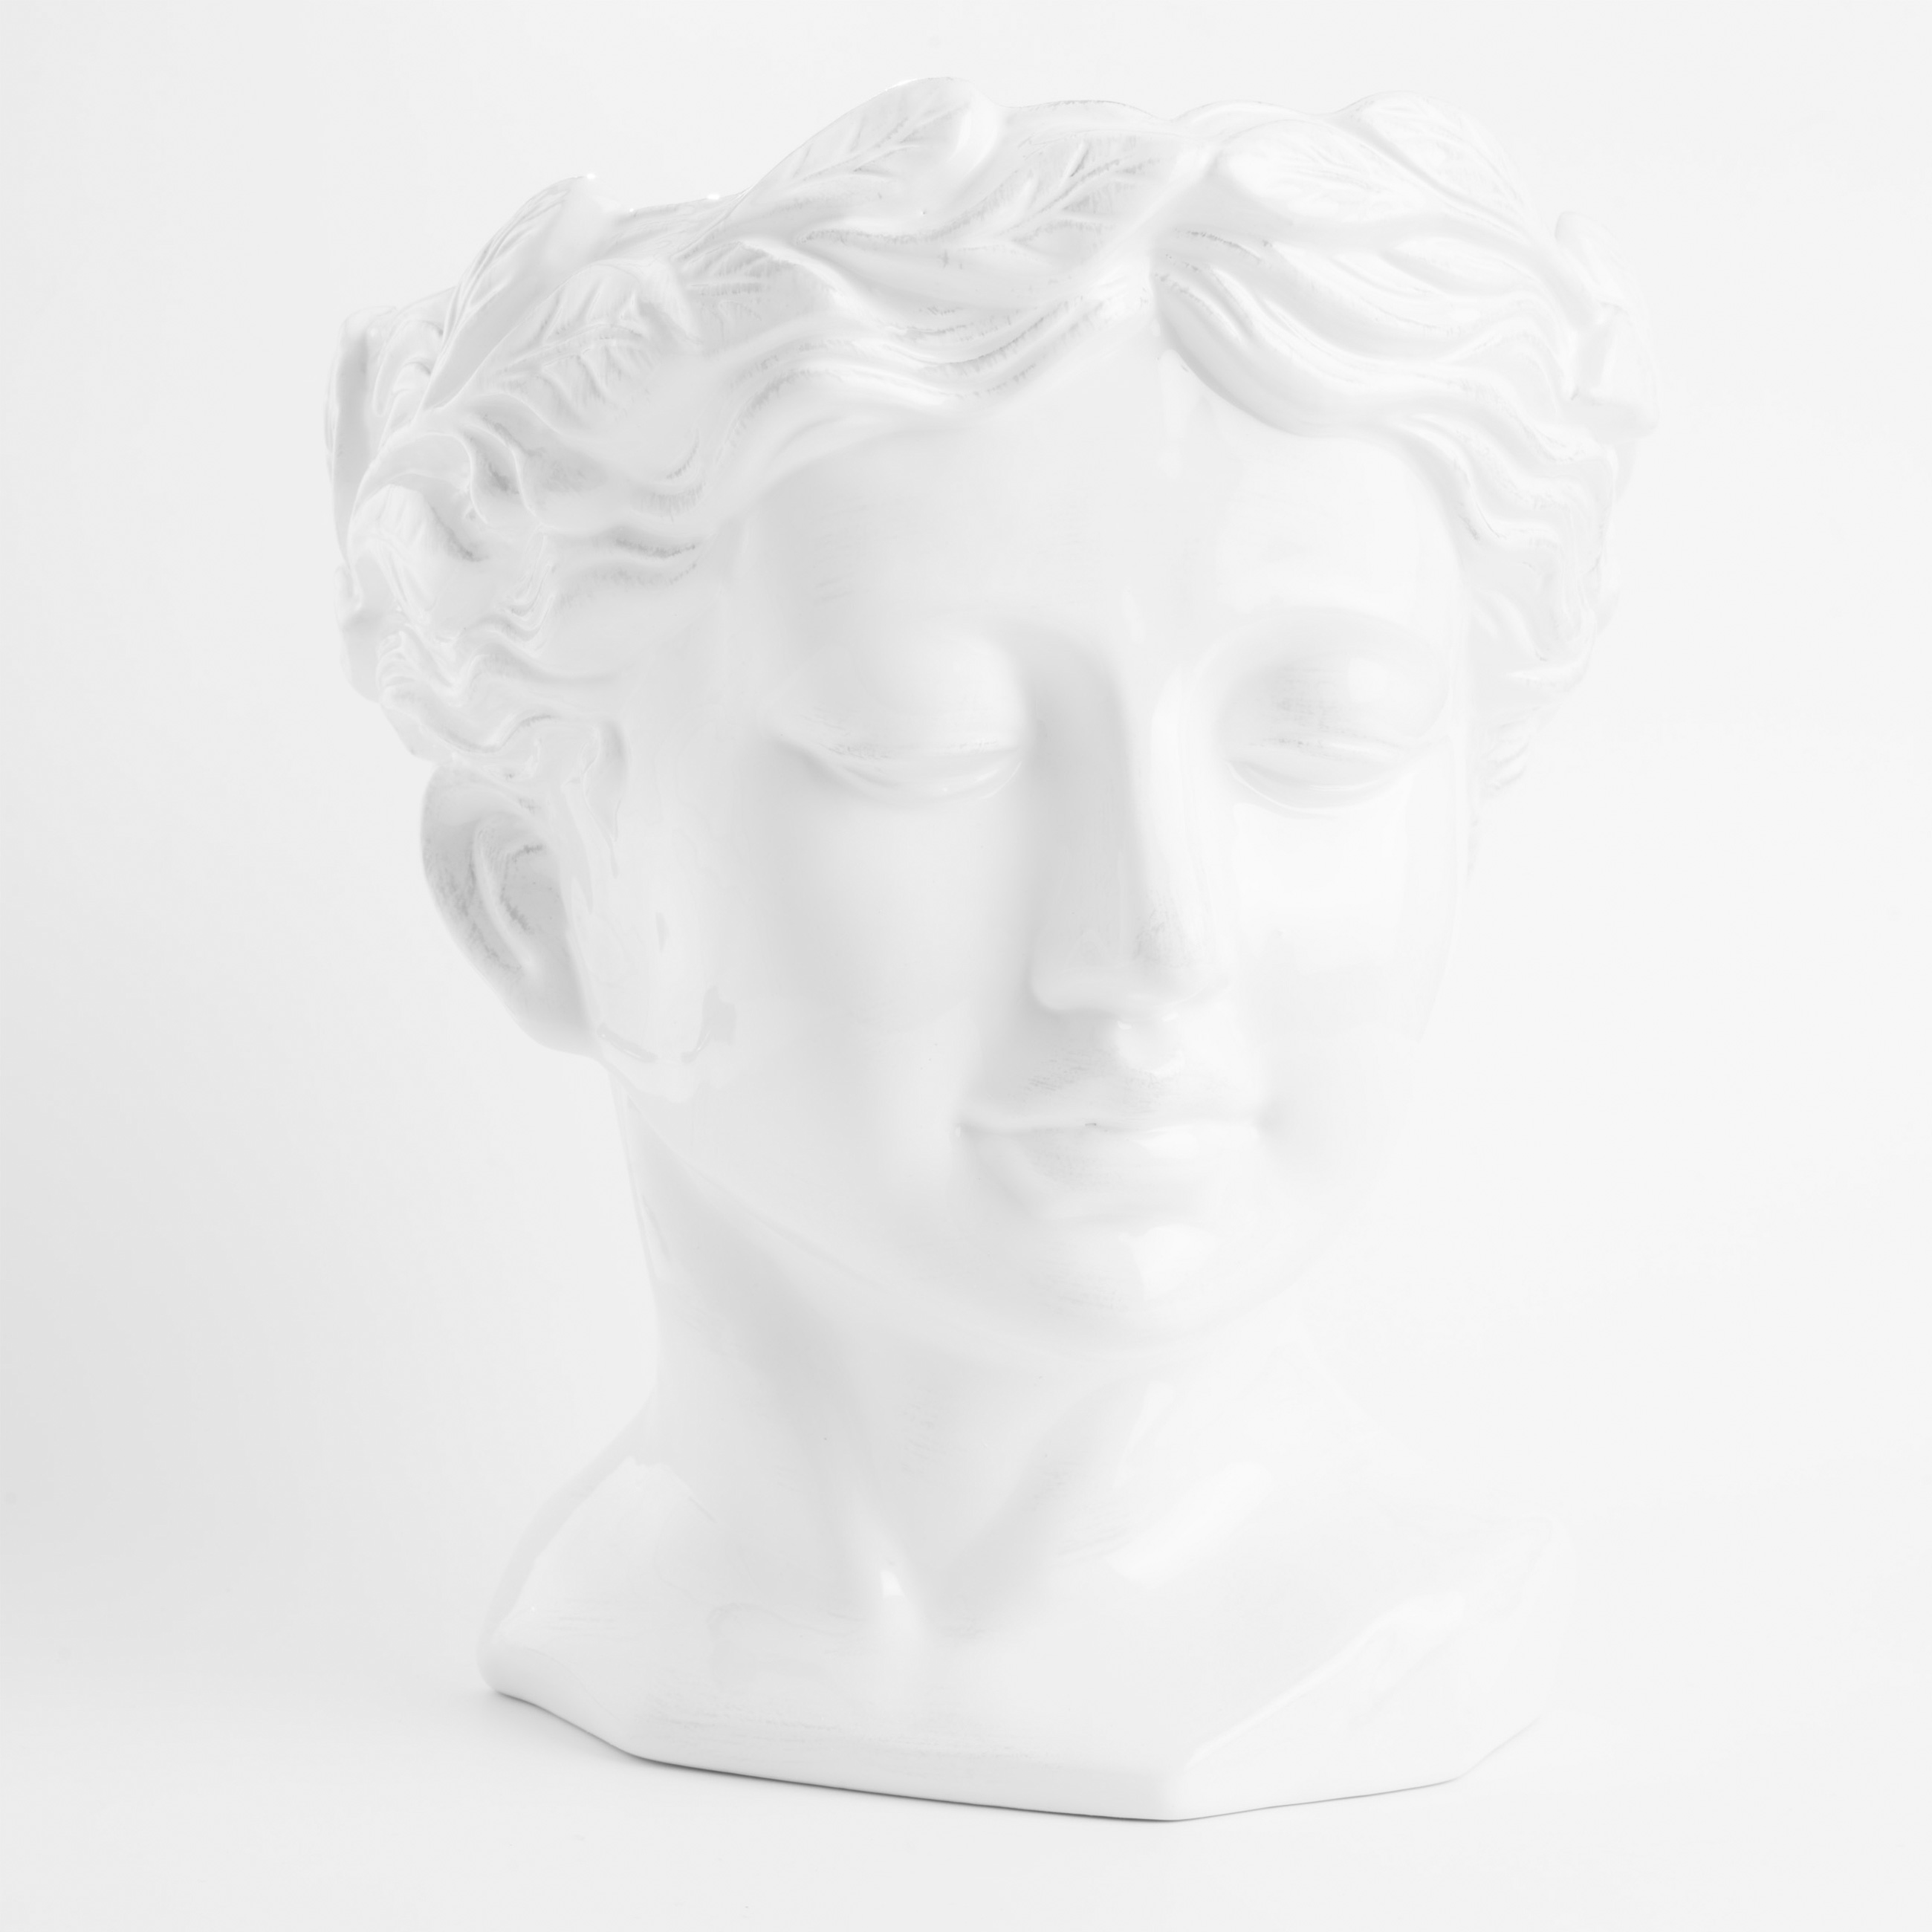 Ваза для цветов, 29 см, декоративная, керамика, белая, Афродита, Olympus изображение № 2